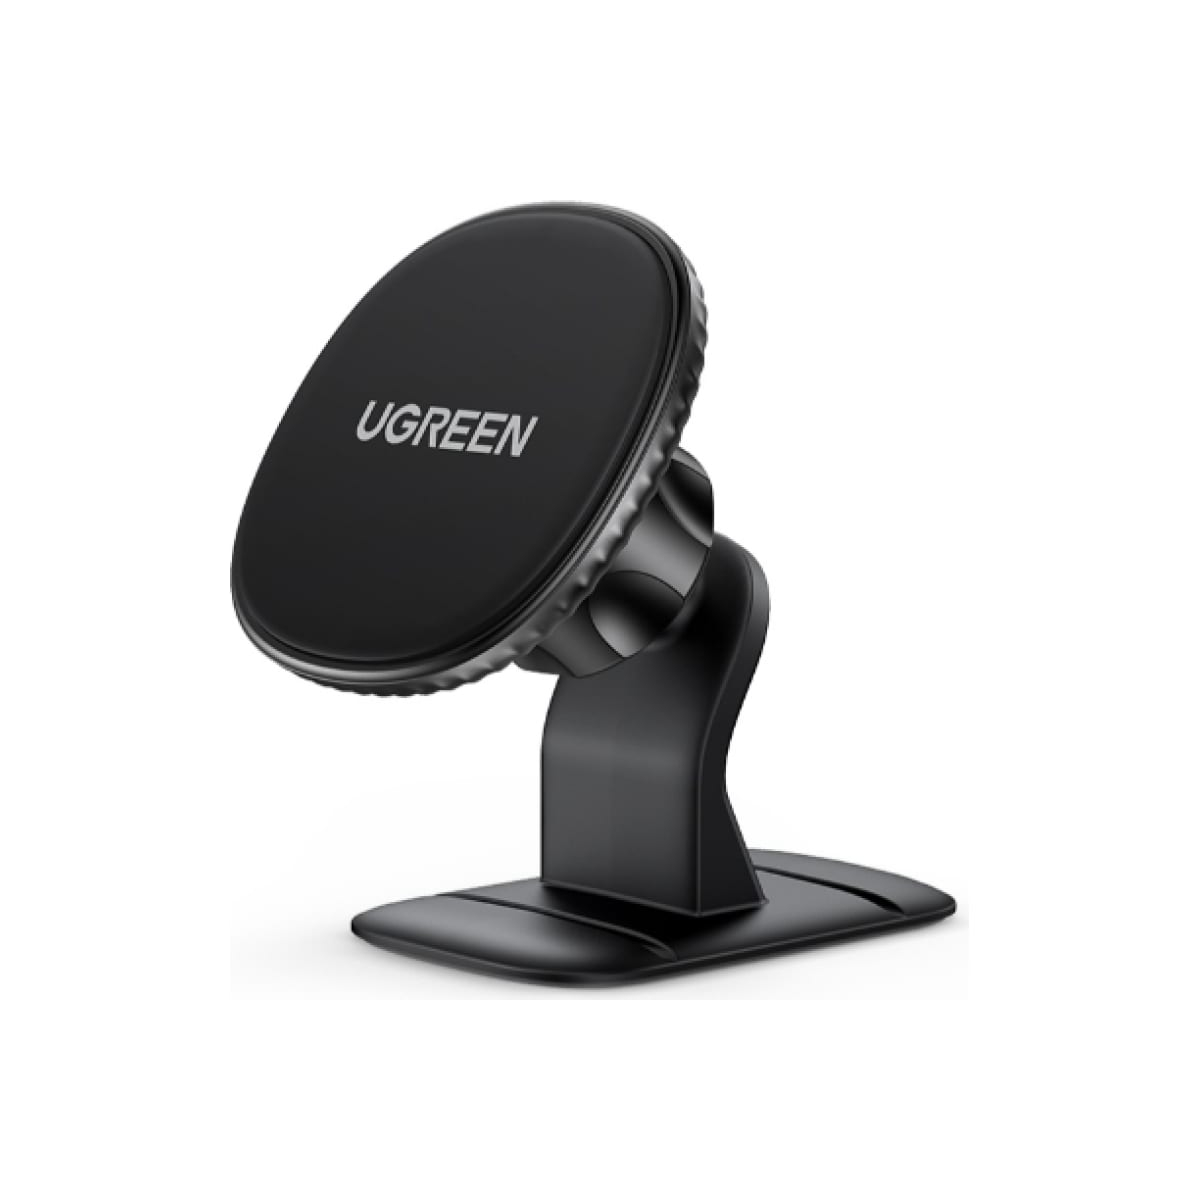 Автомобильный держатель для телефона UGREEN на панель, черный (80785) автомобильный держатель для телефона ugreen черный 1 шт